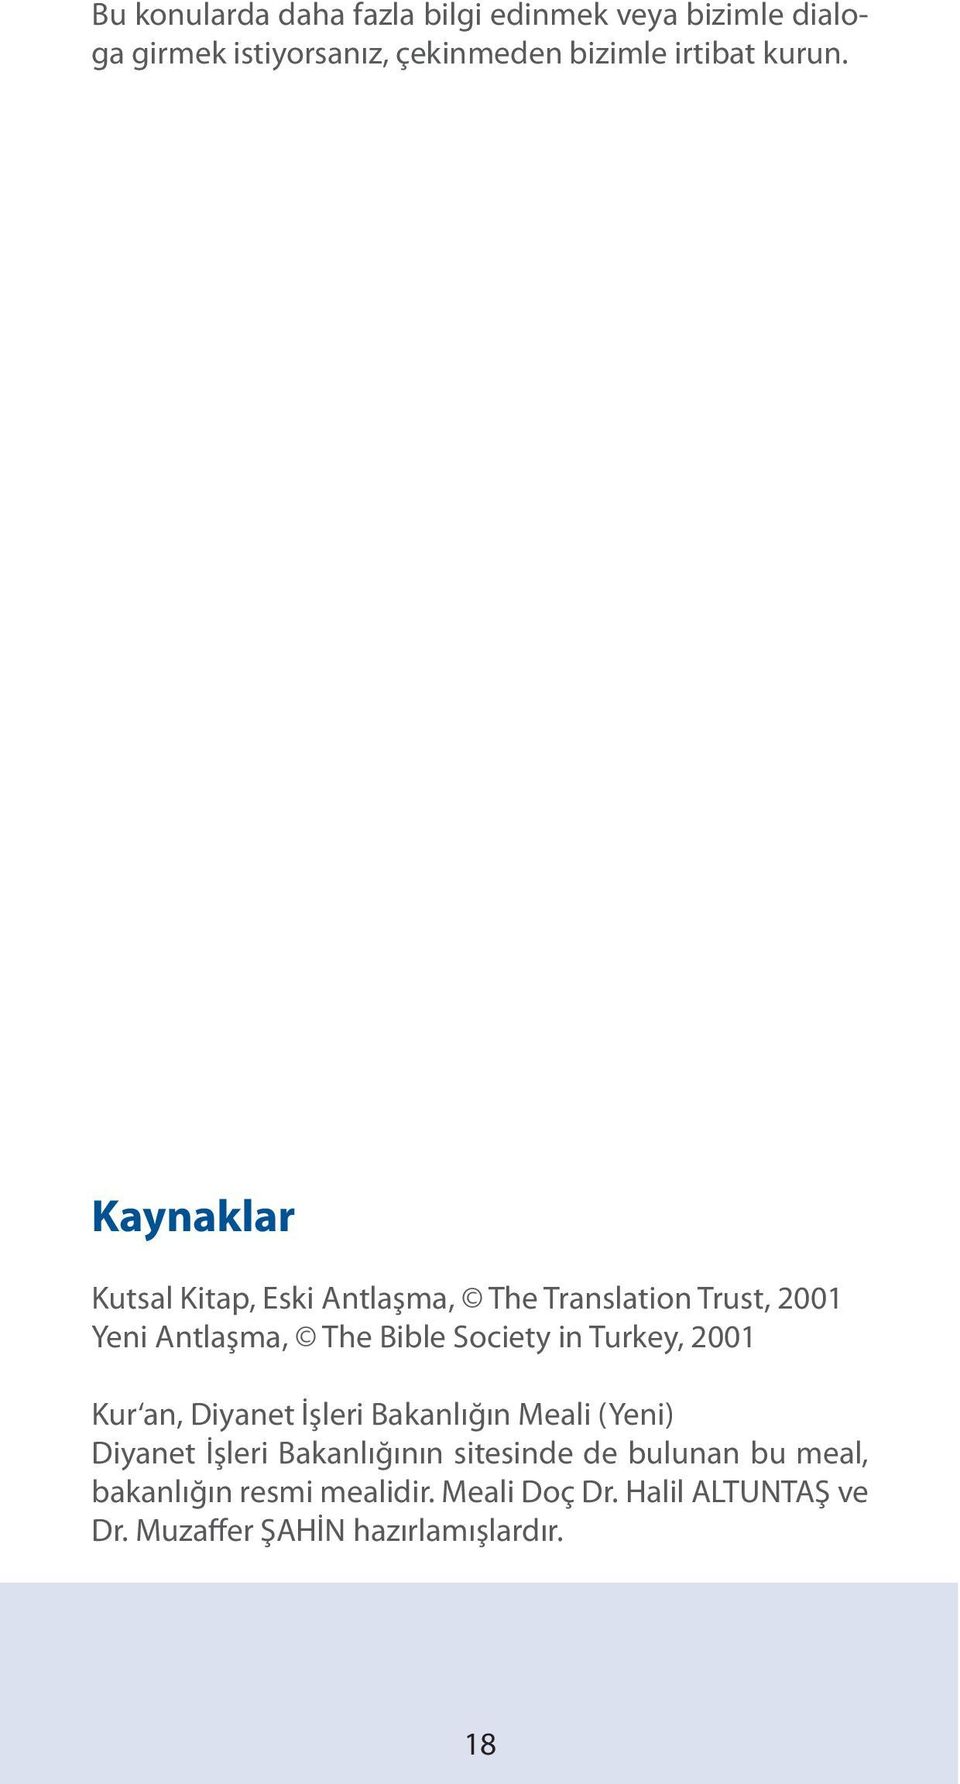 Kaynaklar Kutsal Kitap, Eski Antlaşma, The Translation Trust, 2001 Yeni Antlaşma, The Bible Society in